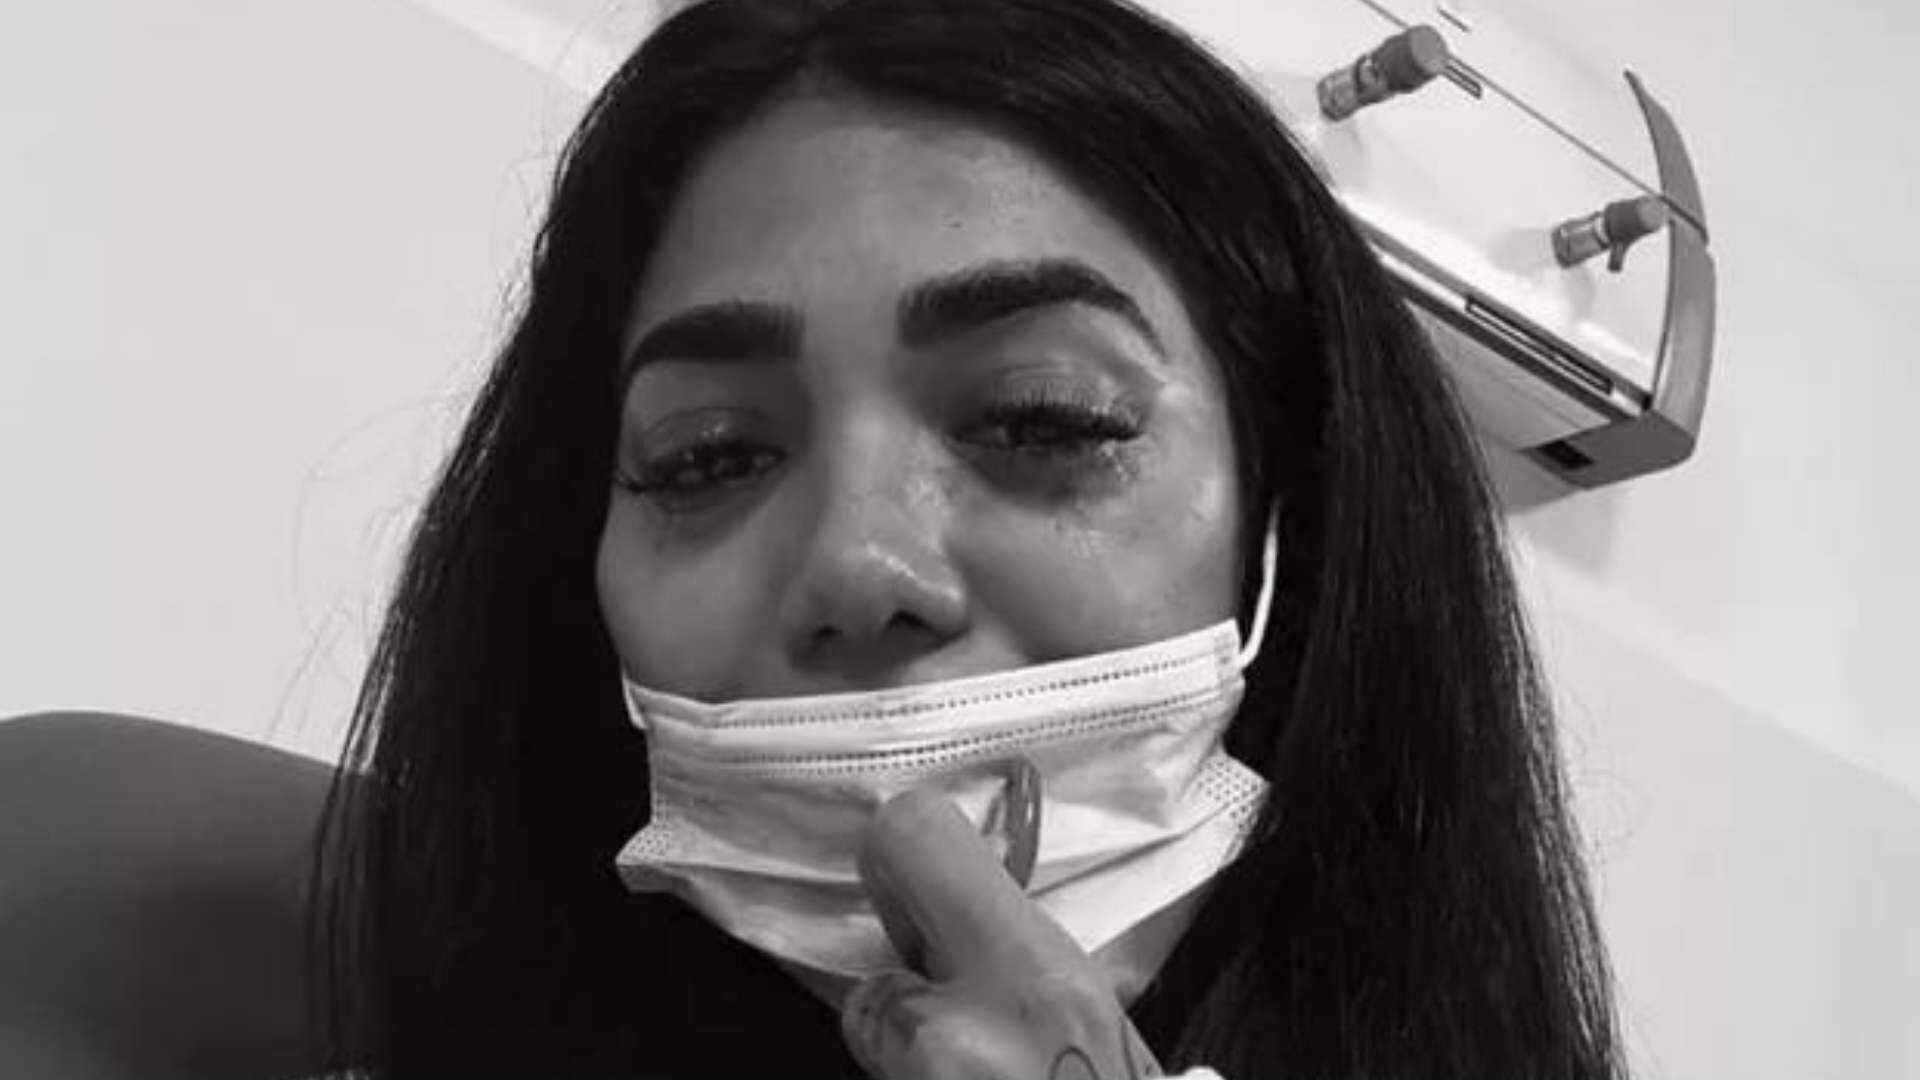 Irmã de Gabigol surge chorando na web e desabafa sobre solidão: “É destruidor” - Metropolitana FM